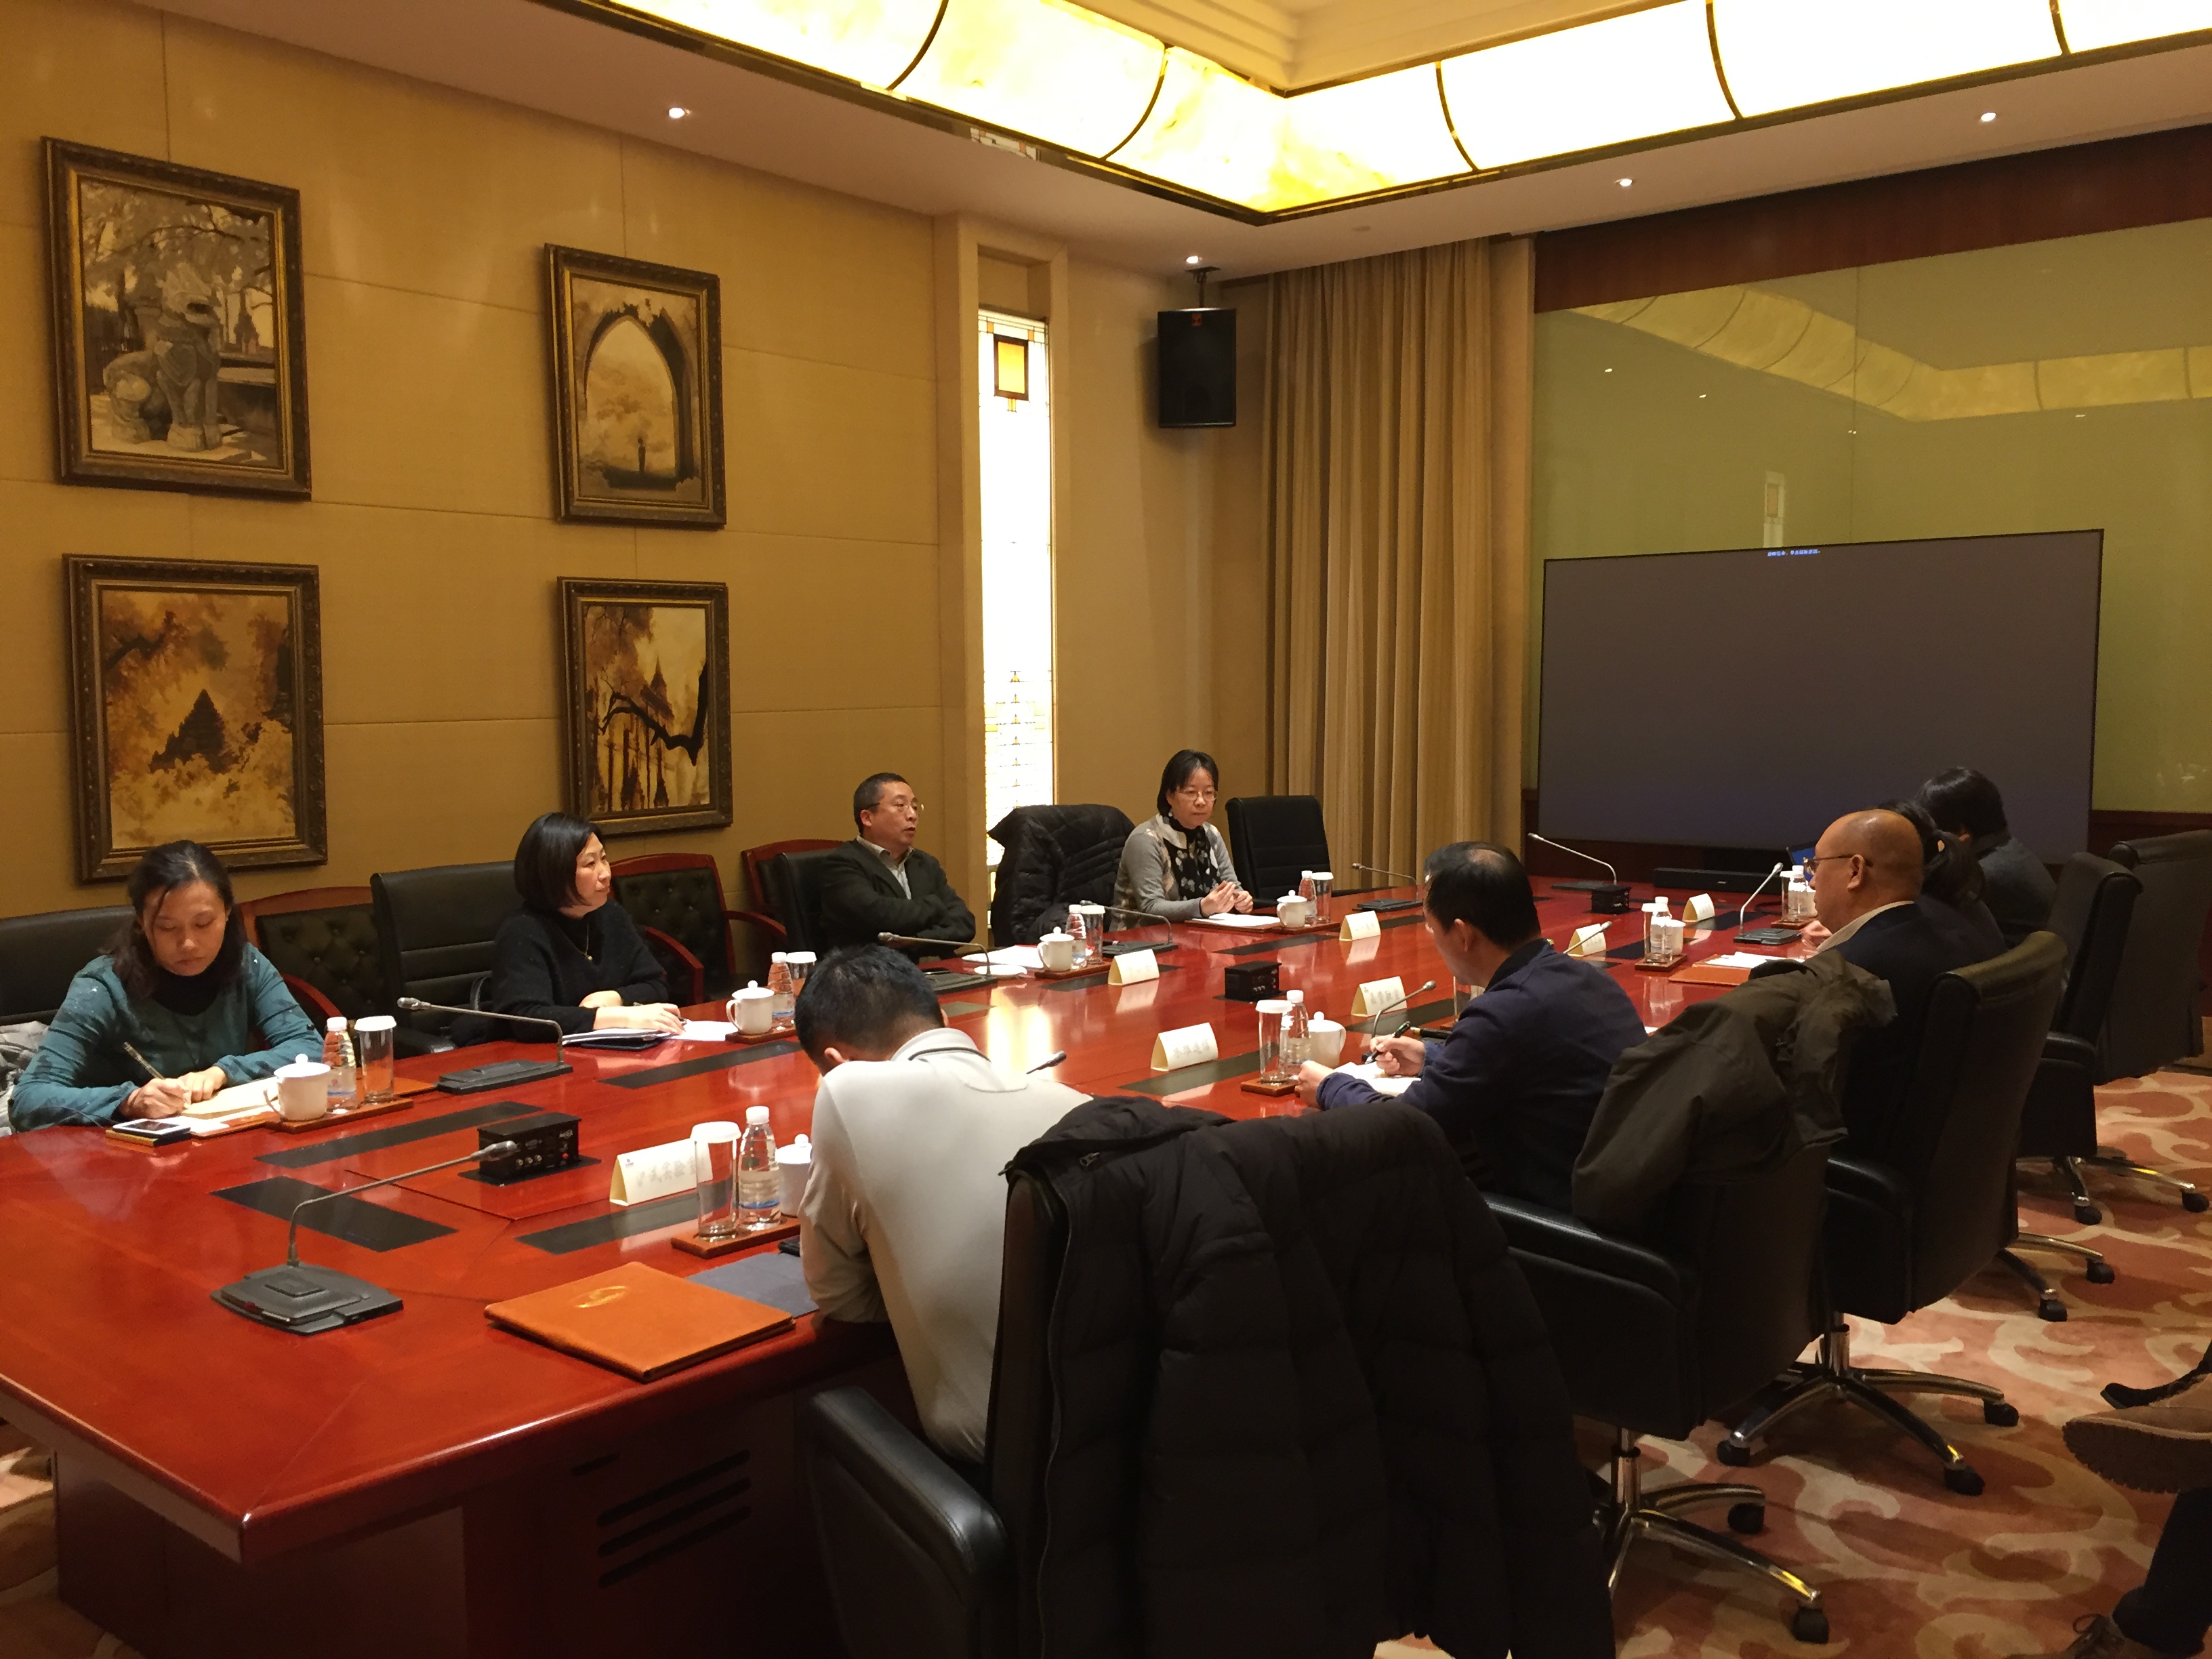 静安区副区长邓小东与民营企业座谈交流晶赞科技ceo汤奇峰代表大数据